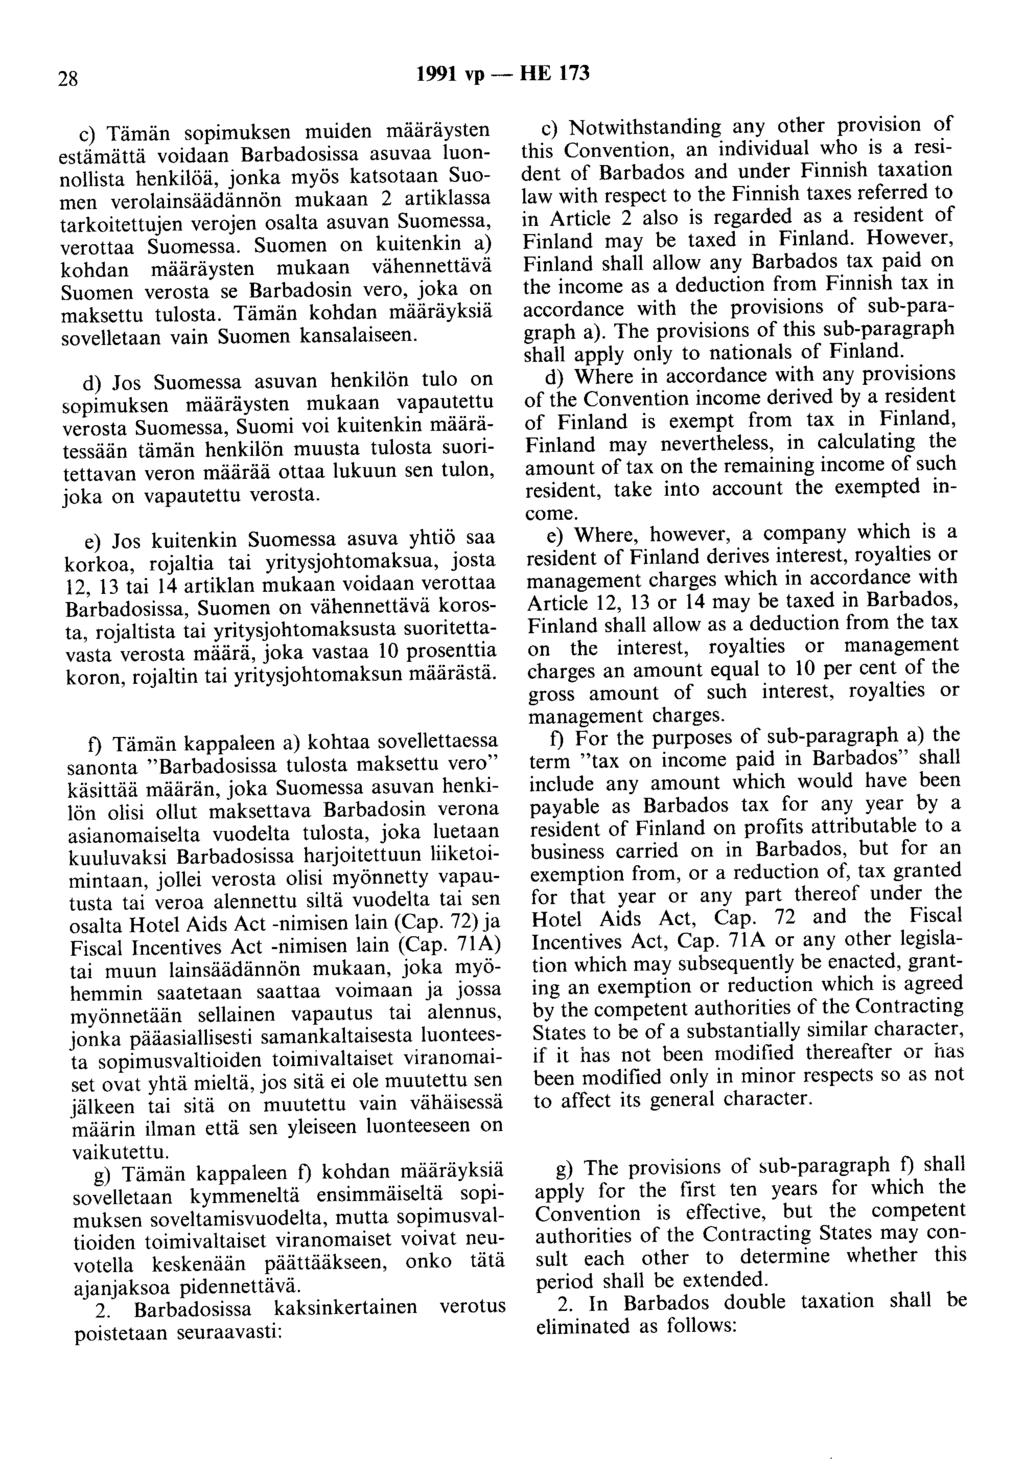 28 1991 vp- HE 173 c) Tämän sopimuksen muiden määräysten estämättä voidaan Barbadosissa asuvaa luonnollista henkilöä, jonka myös katsotaan Suomen verolainsäädännön mukaan 2 artiklassa tarkoitettujen